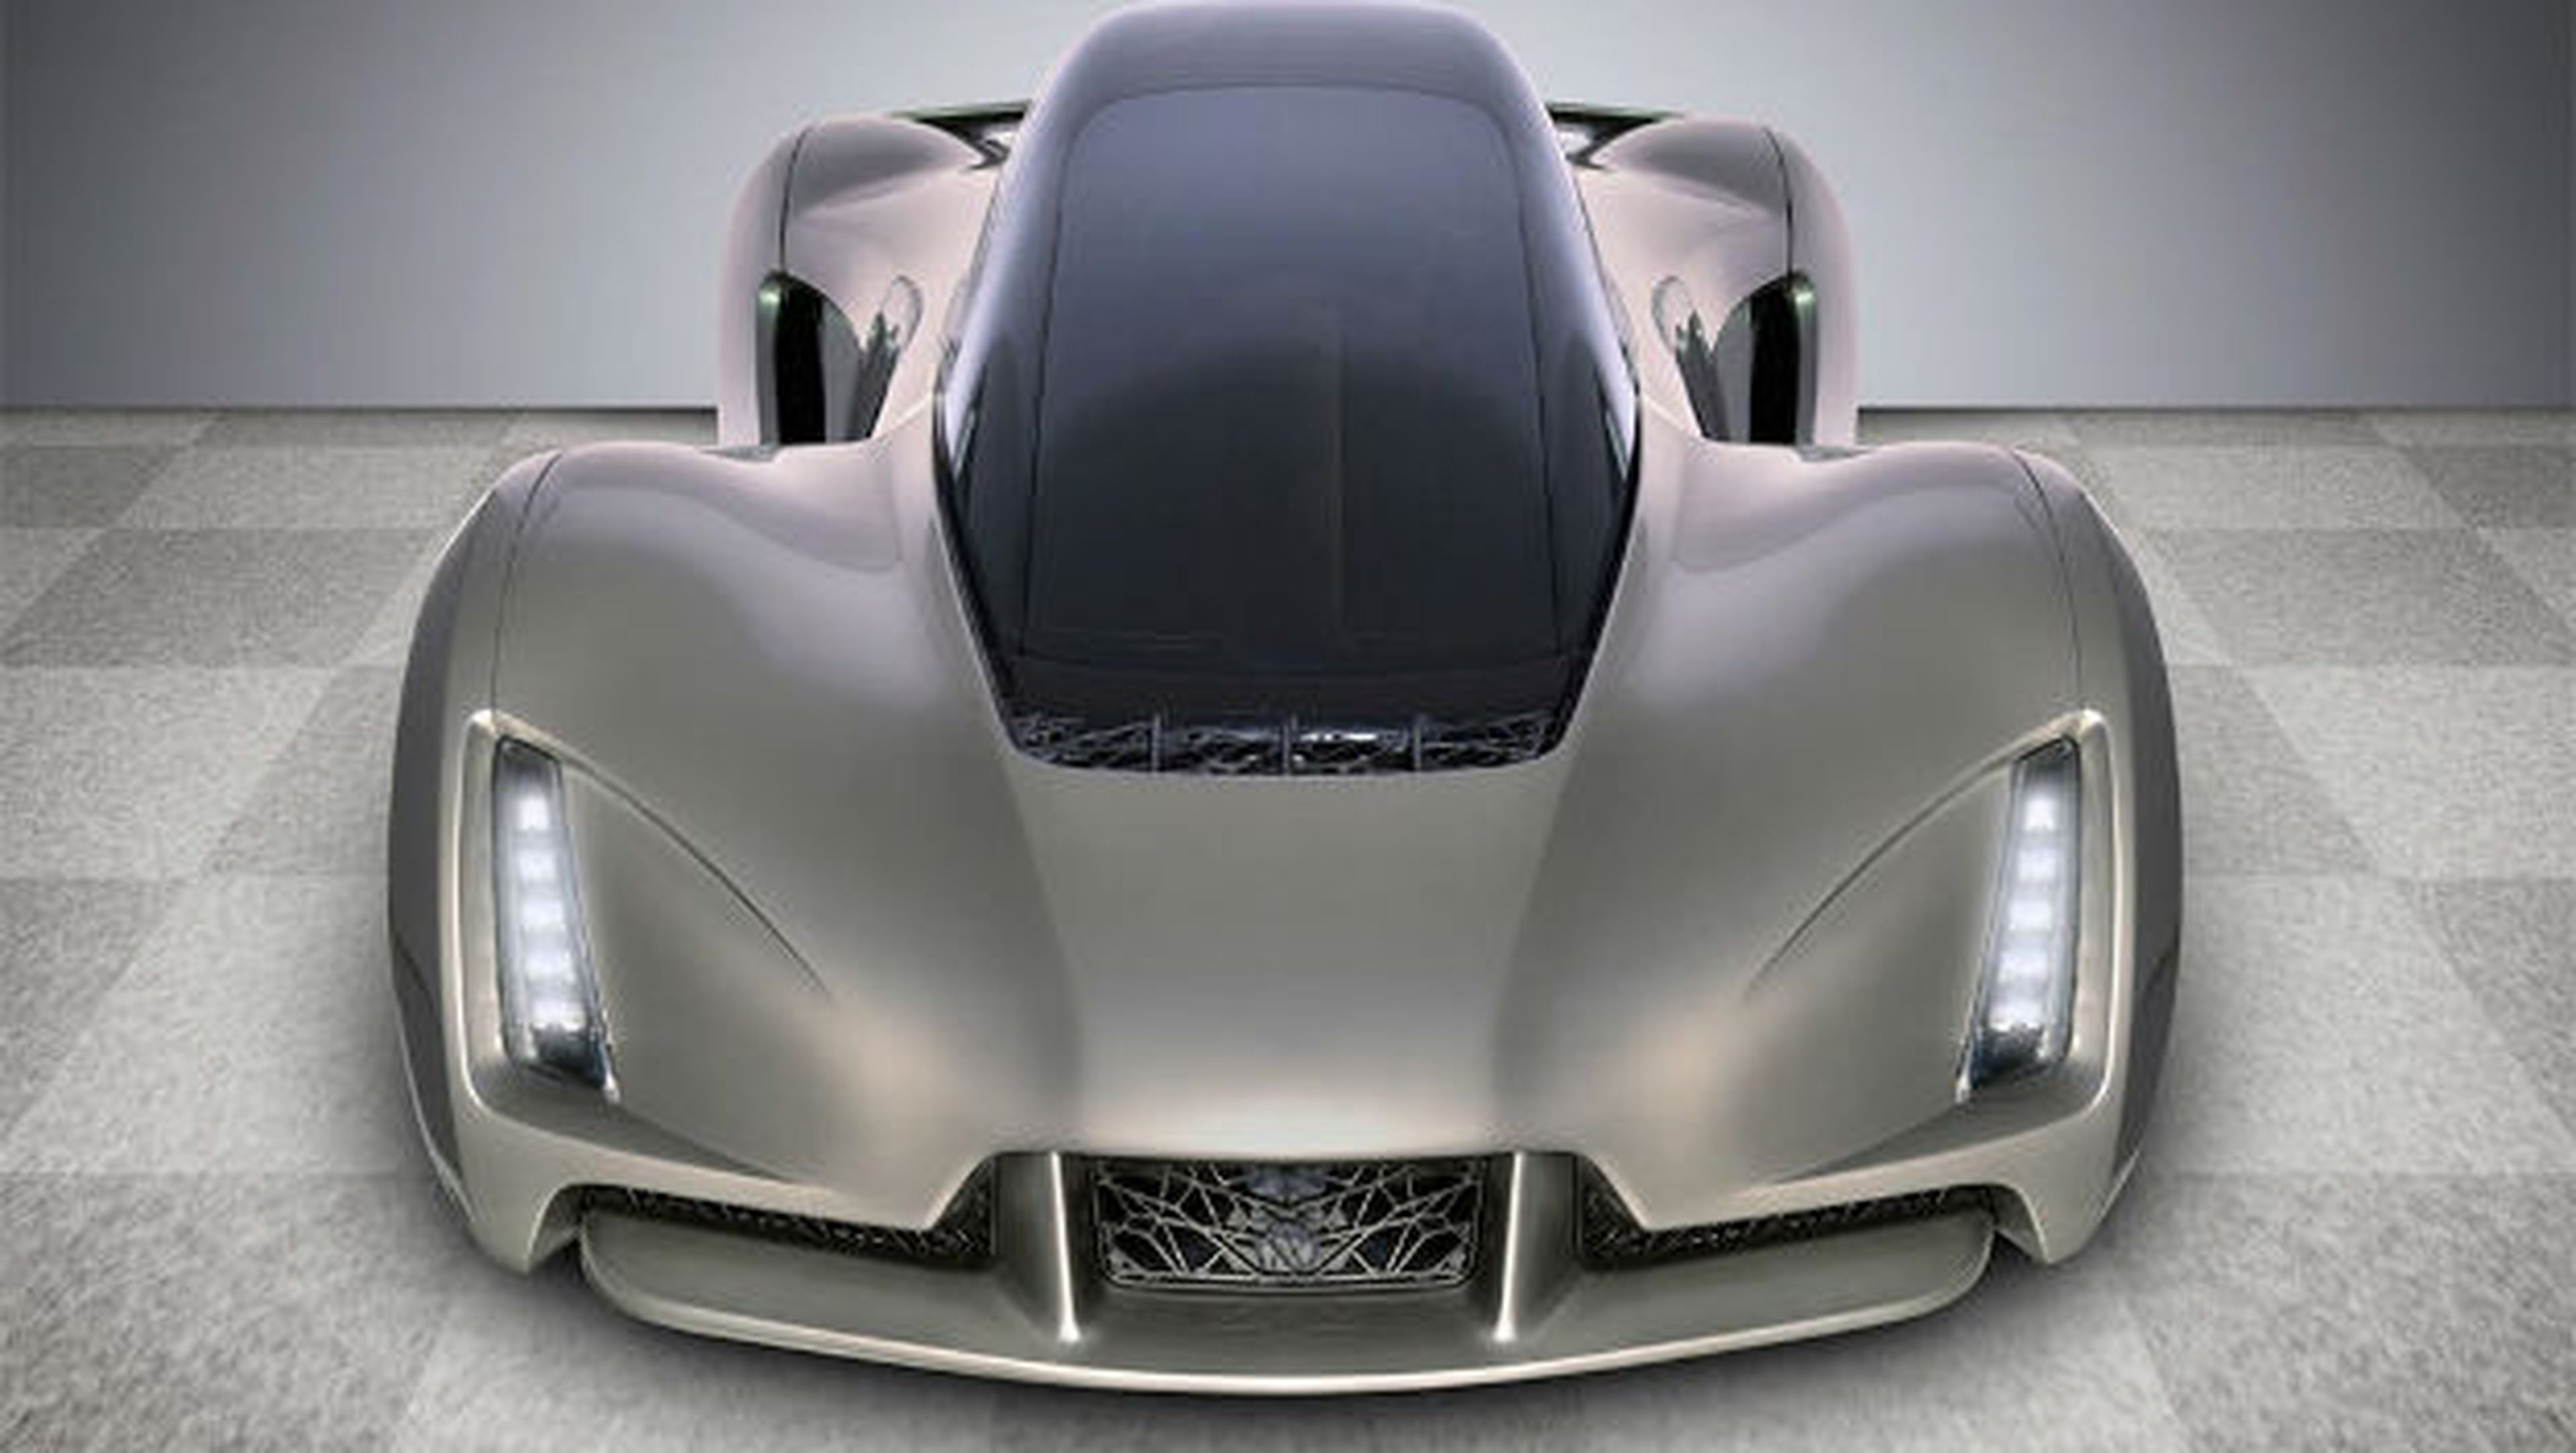 El primer coche superdeportivo impreso en 3D, The Blade